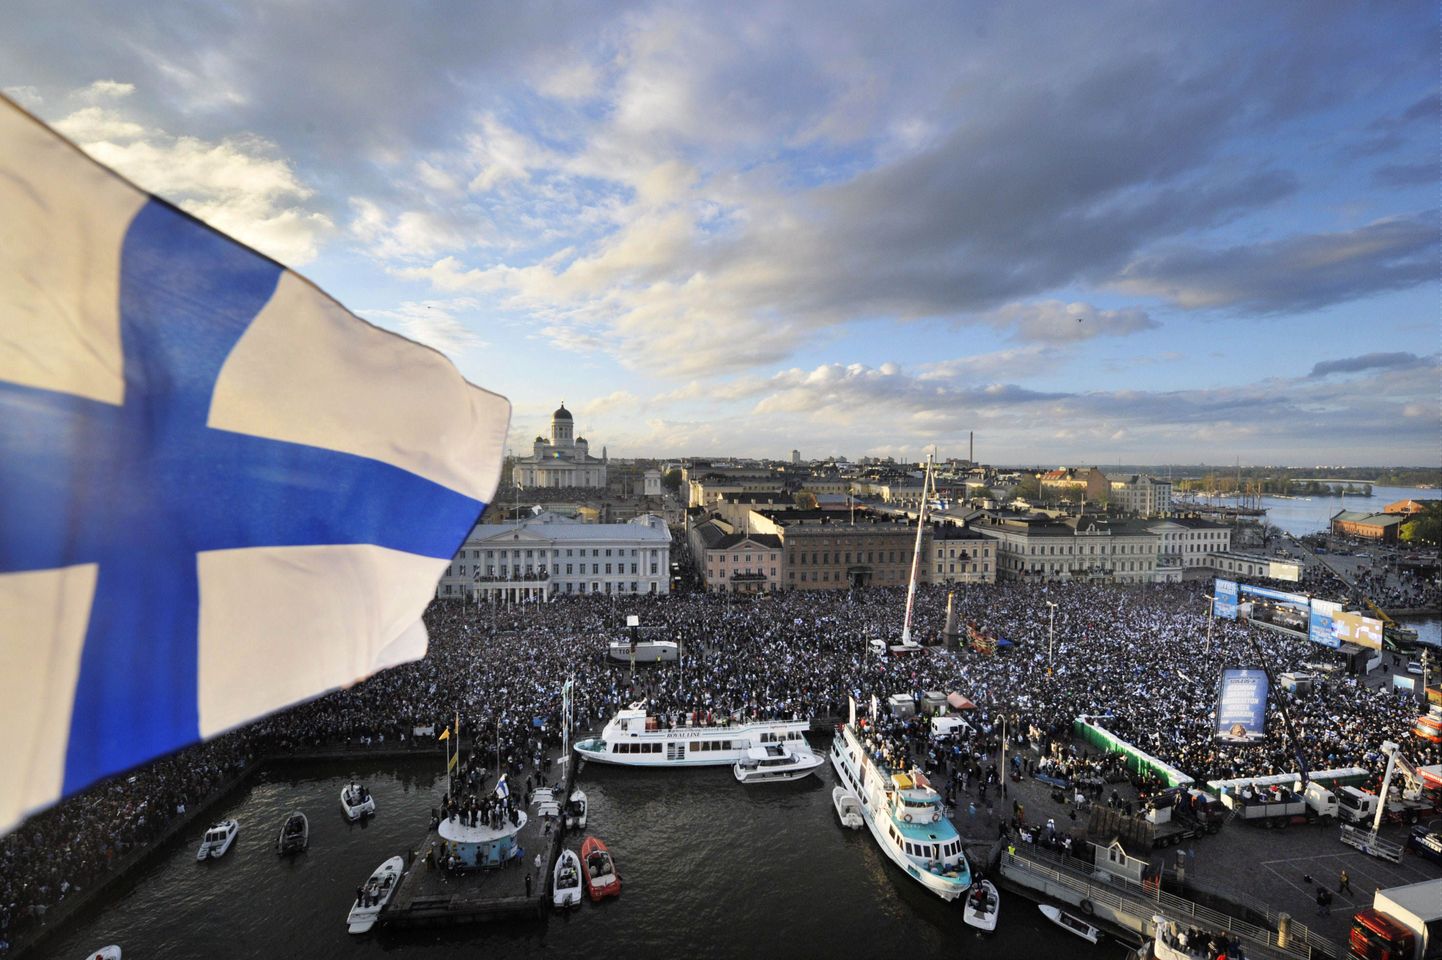 Soome pealinlased on aja kokkuhoiu huvides nõus erakliinikutes käima